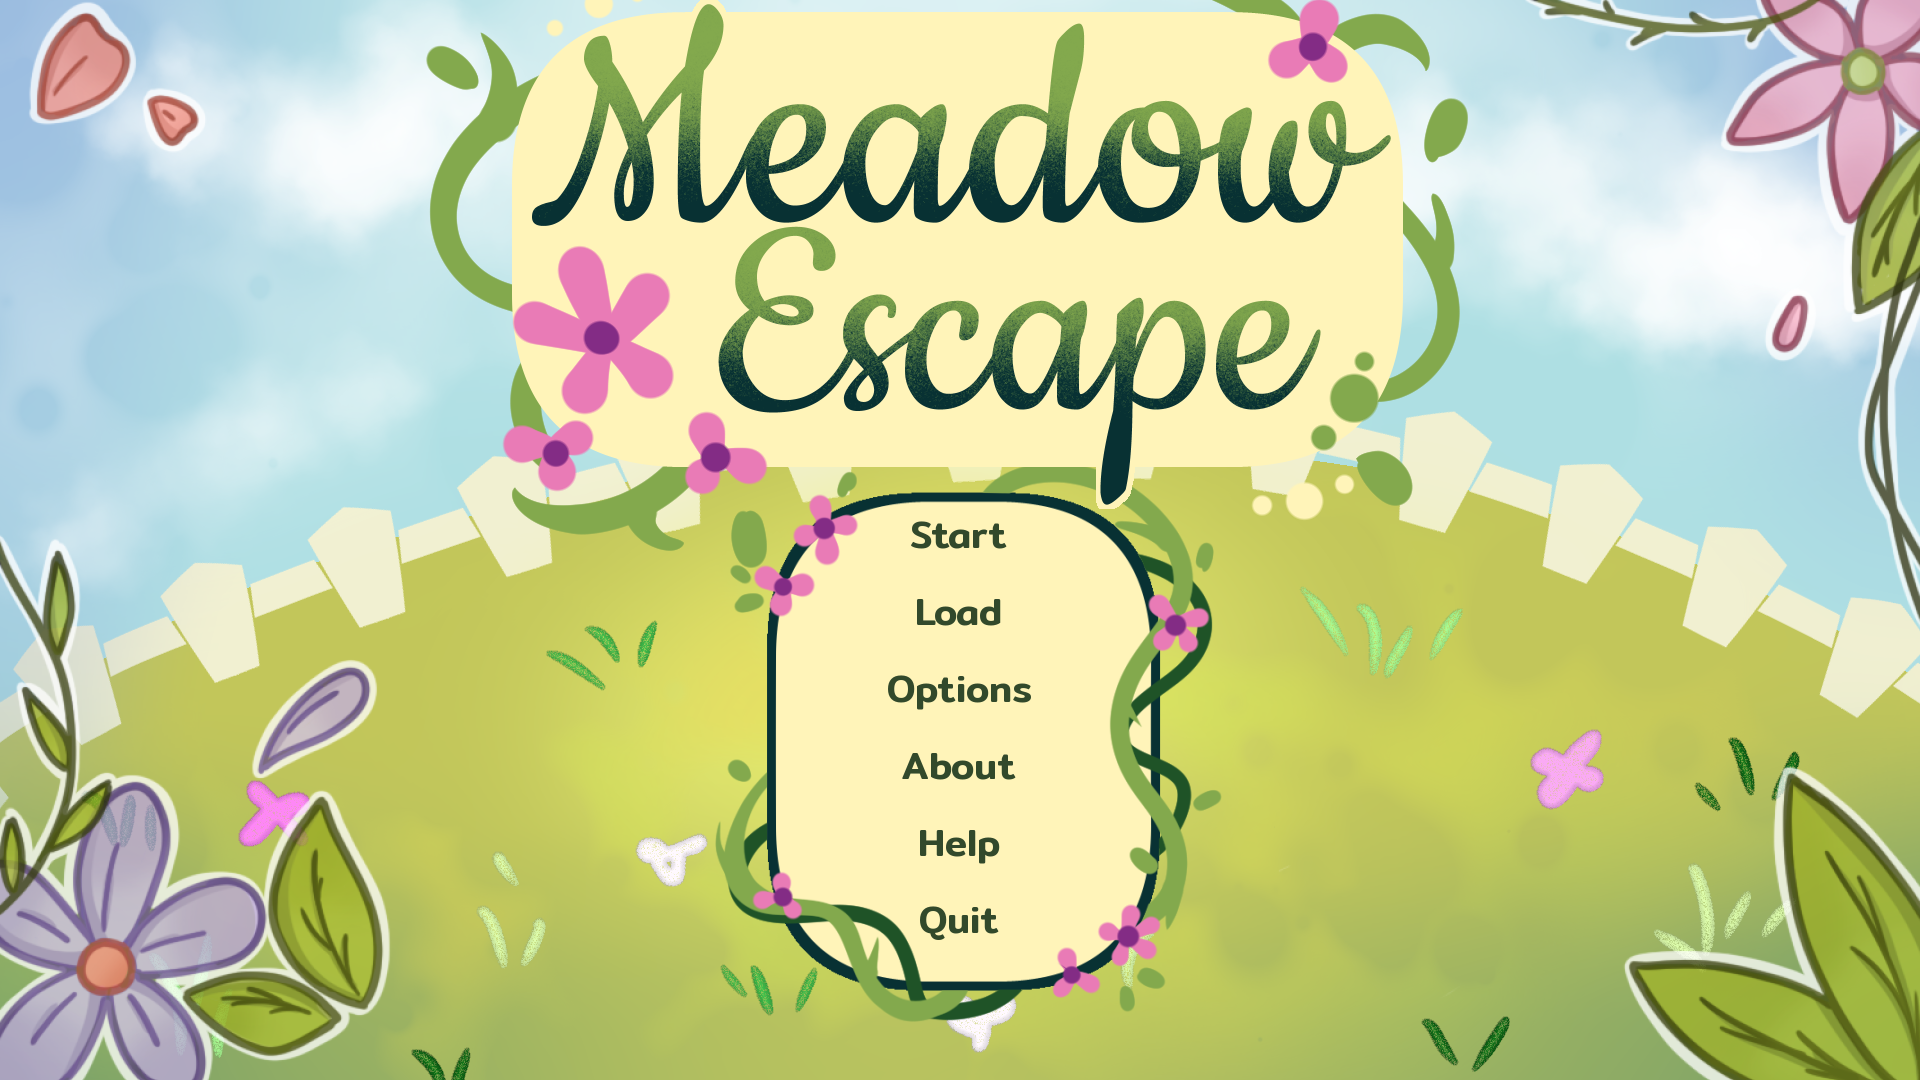 Meadow Escape